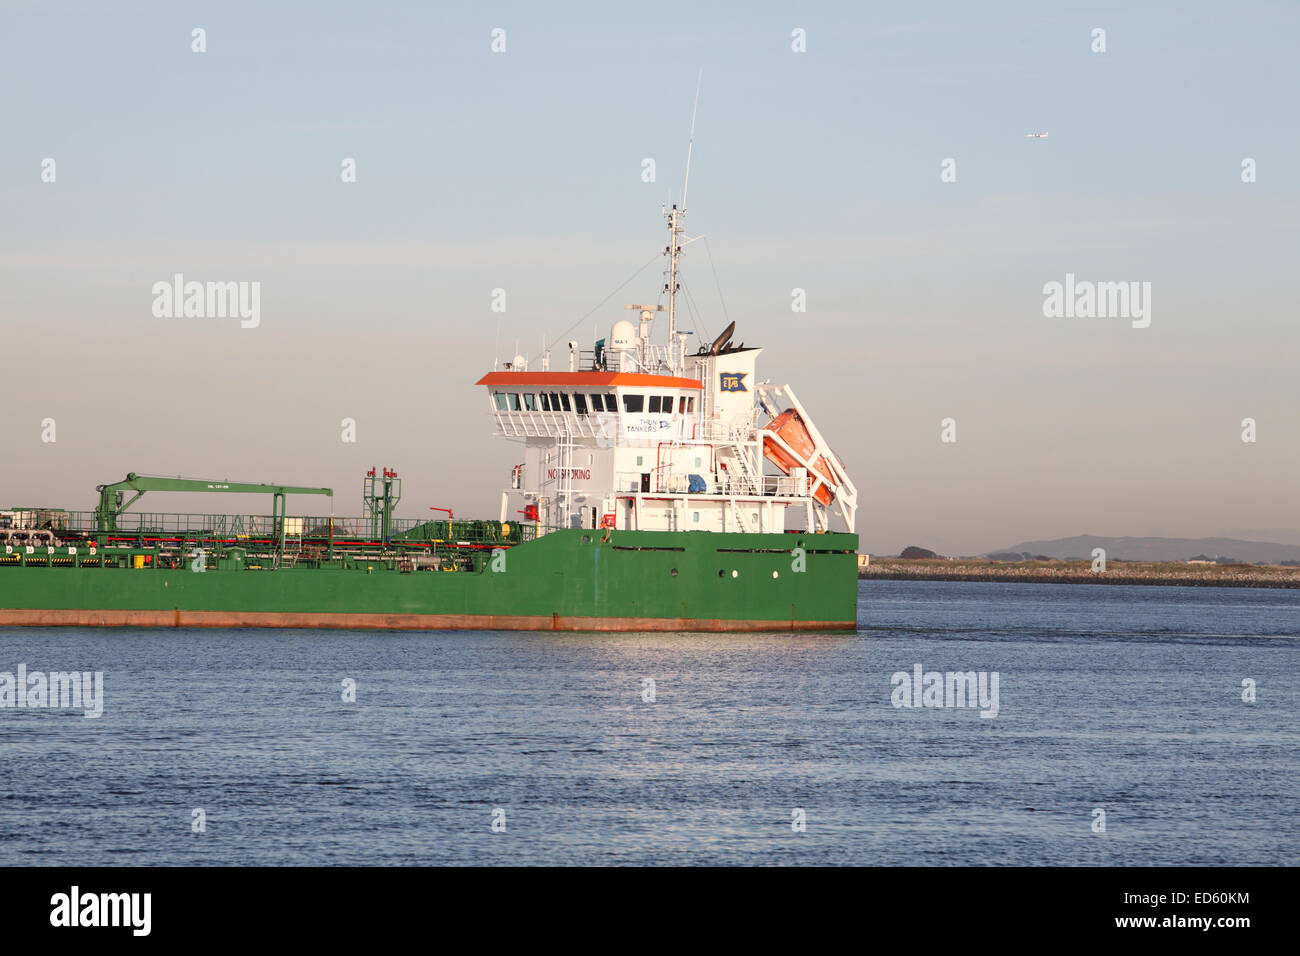 Thun Gratitude merchant ship entering Dublin Harbour Stock Photo